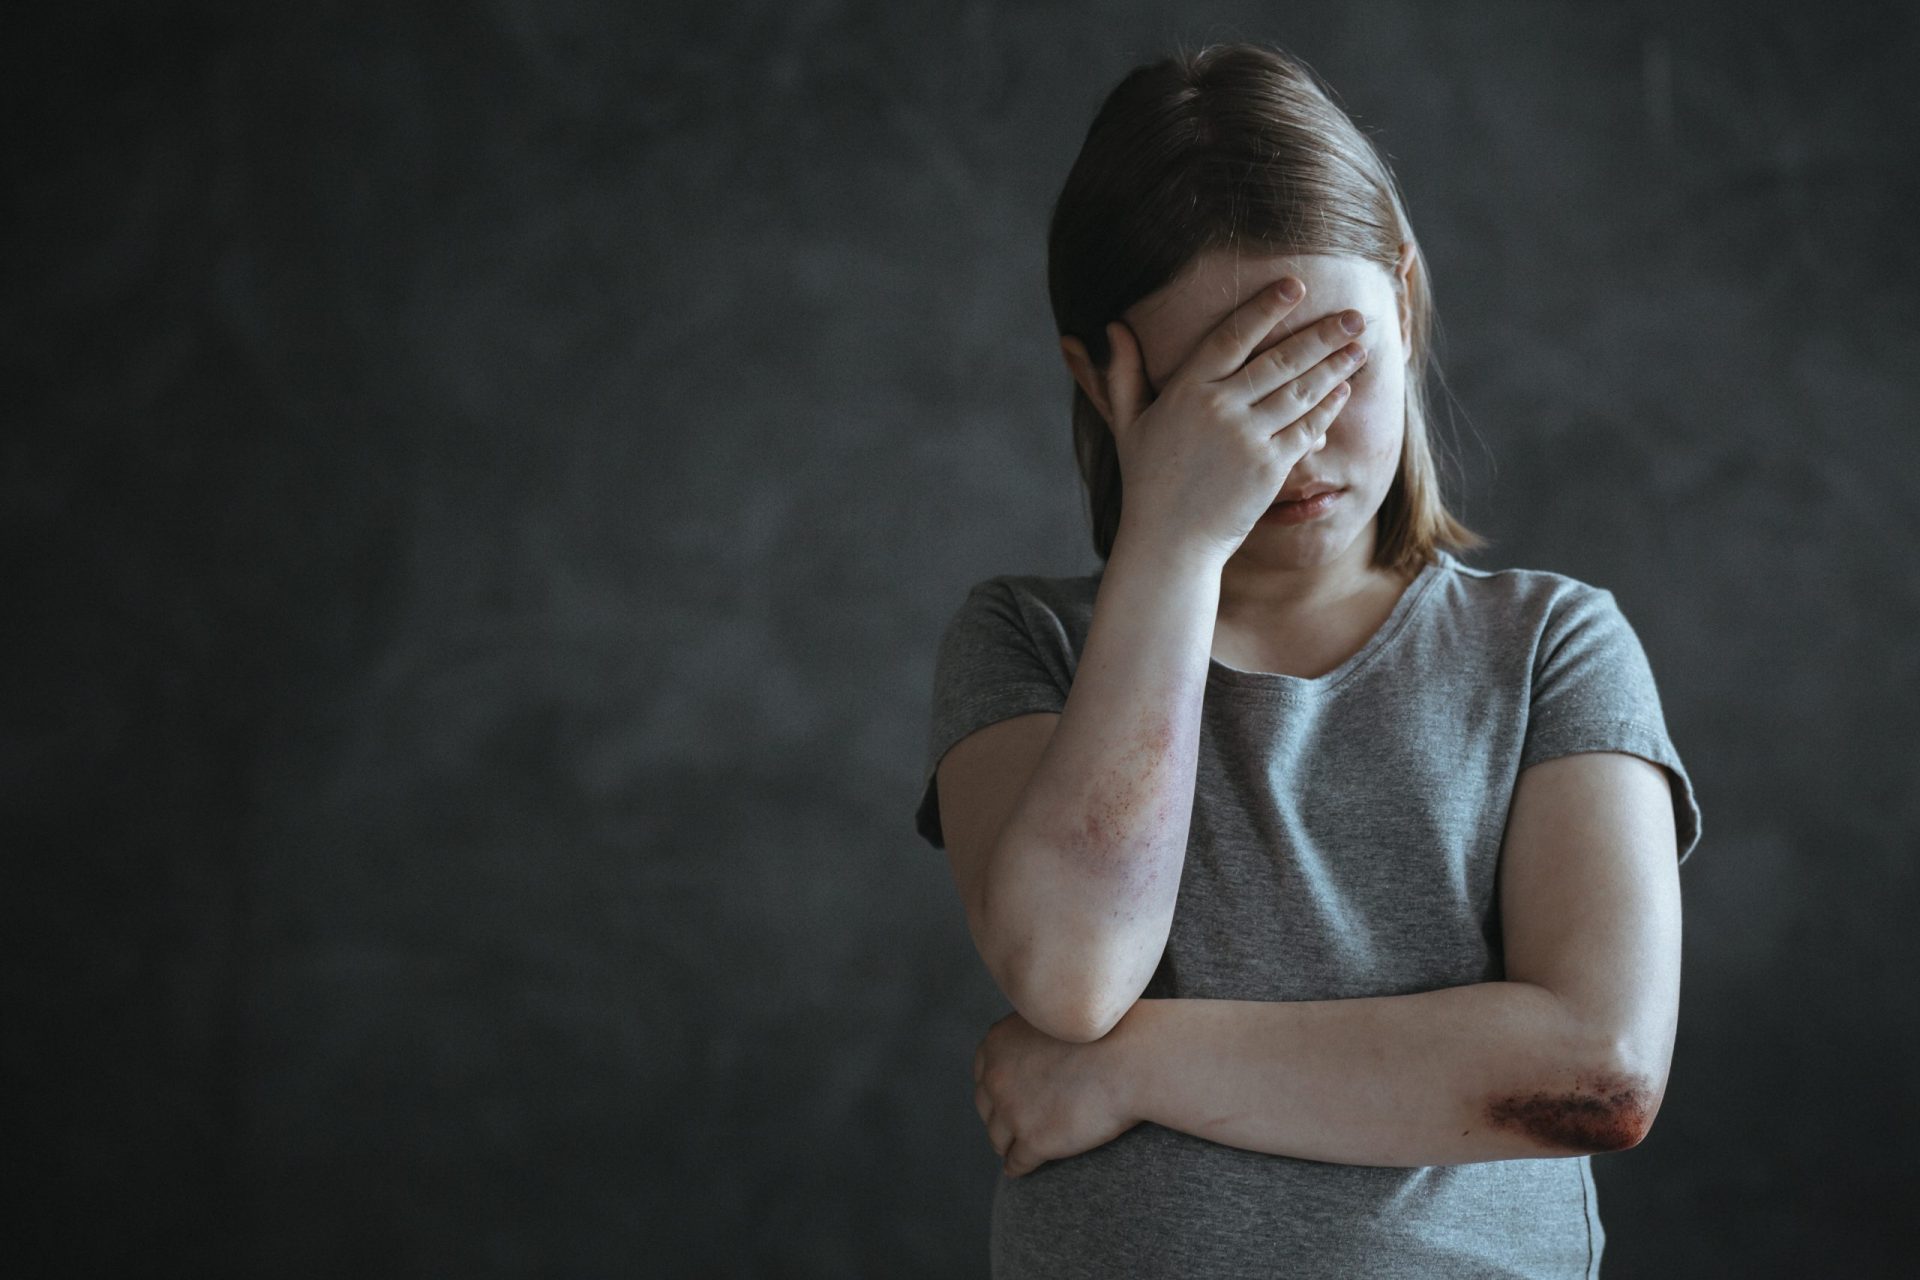 Rapariga de 12 anos abusava sexualmente de criança